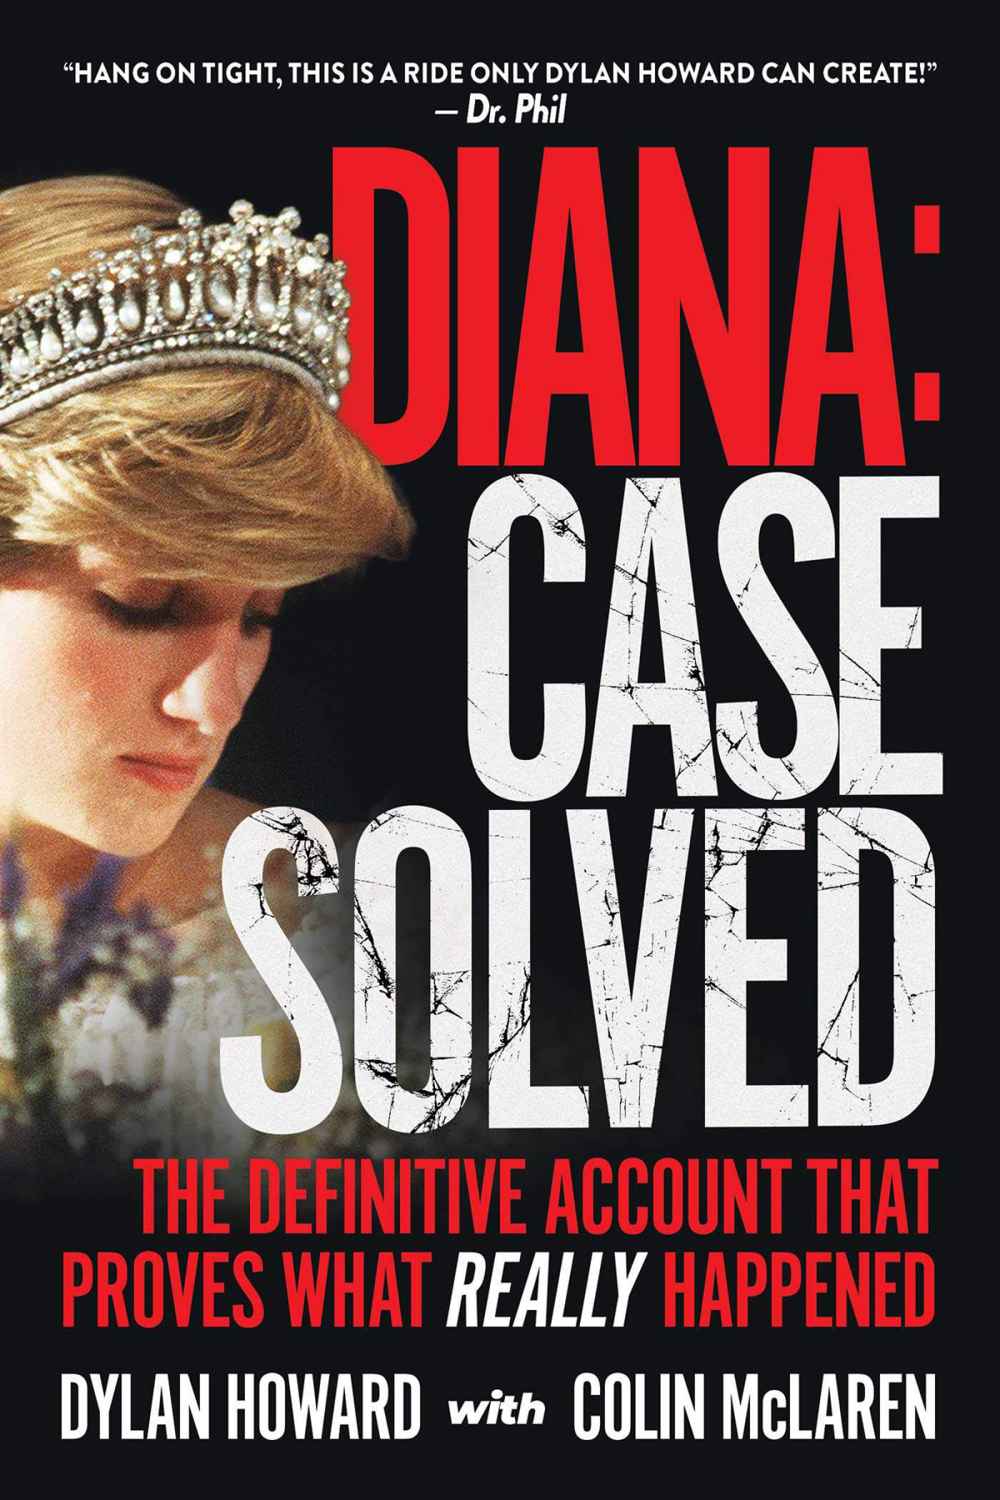 Princess Diana Case Solved Book